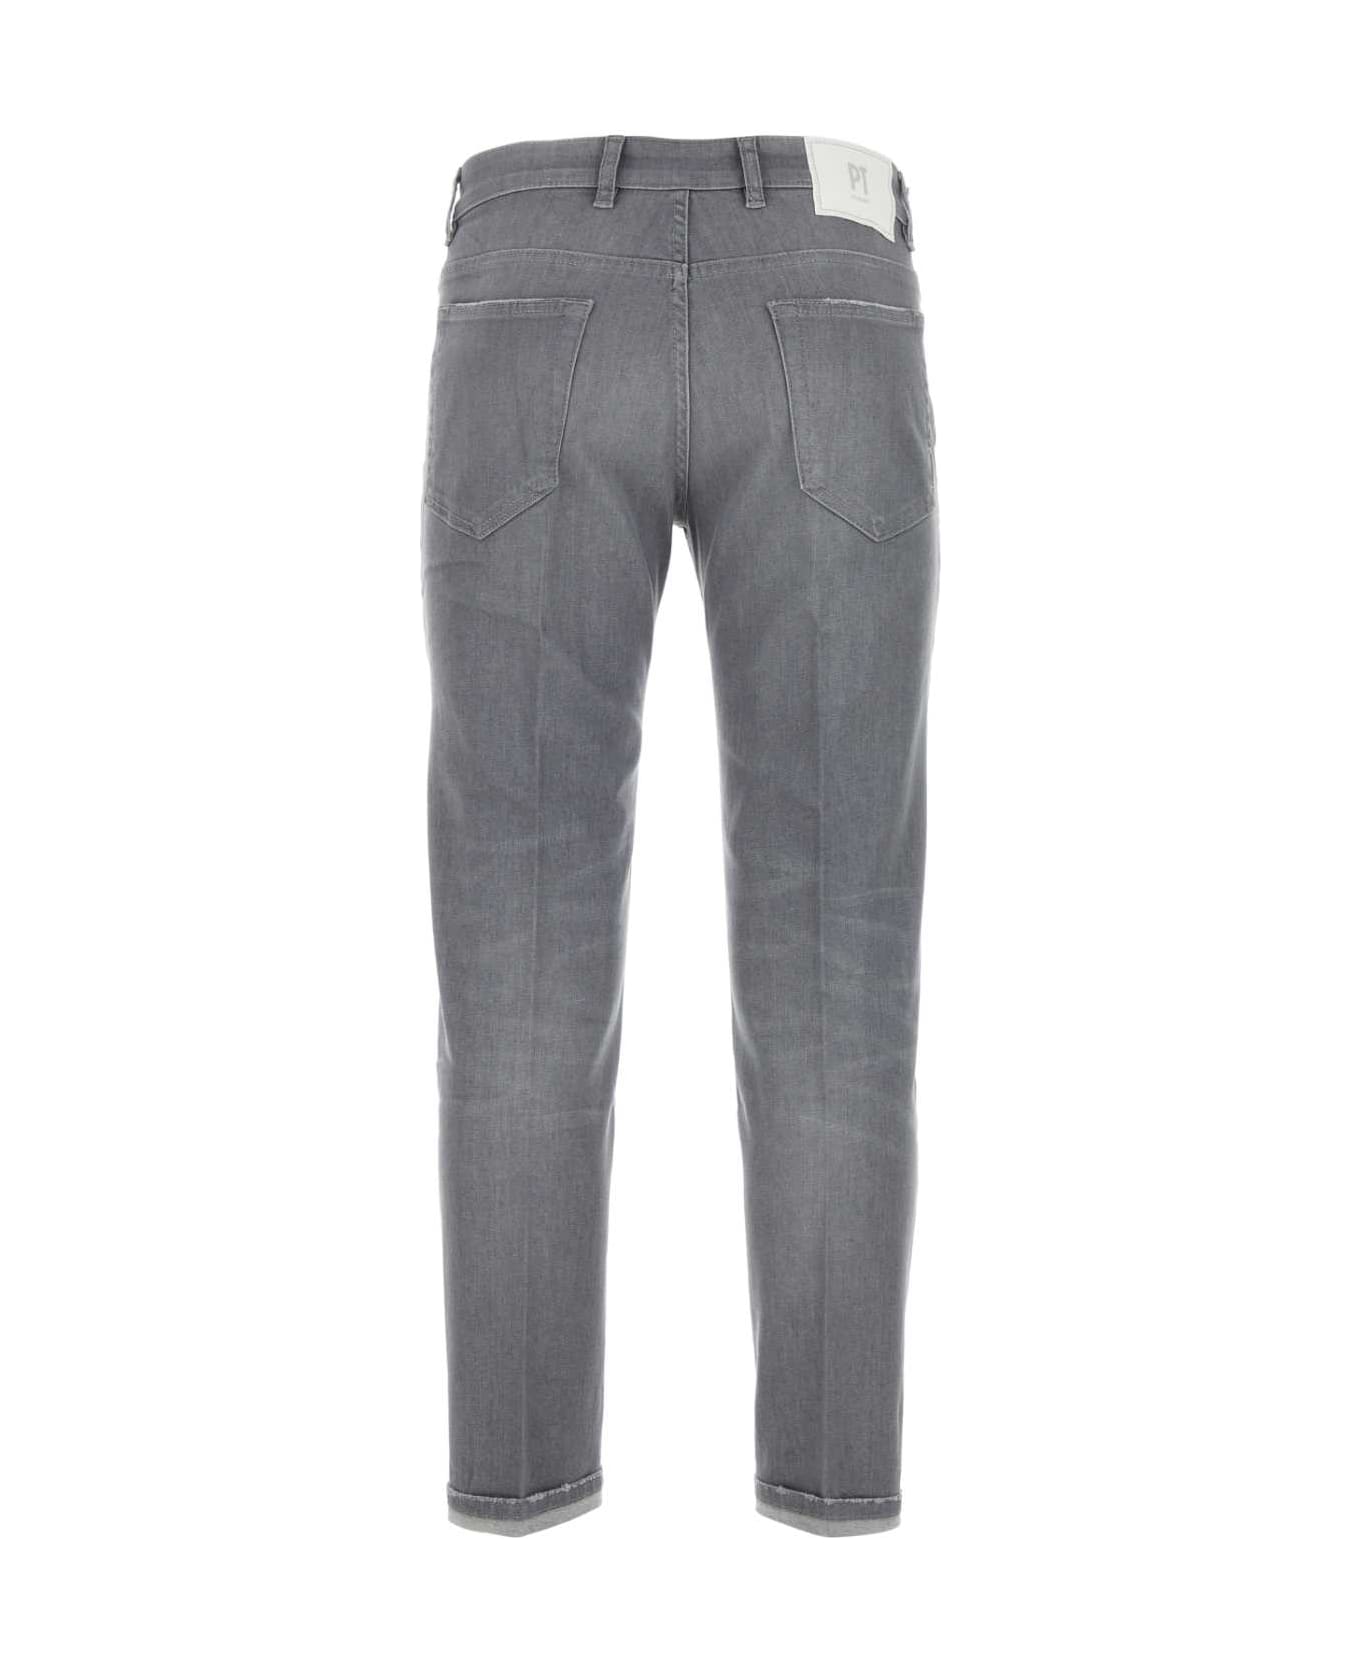 PT Torino Grey Stretch Denim Indie Jeans - GRIGIO